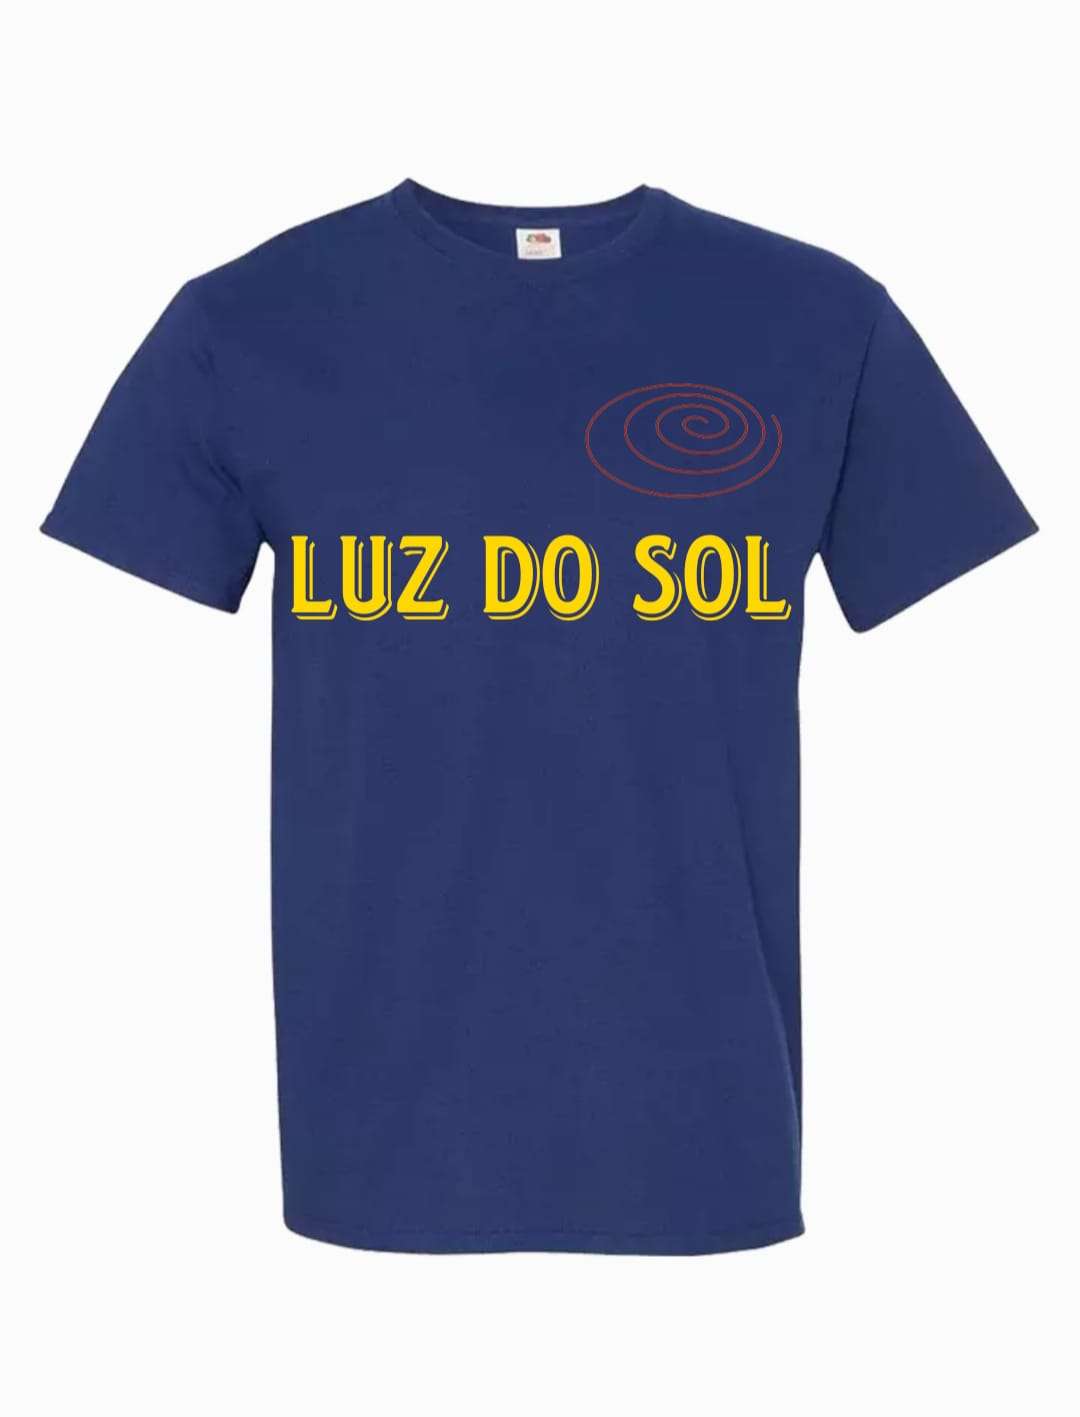 Luz Do Sol Service - Lisboa - Limpeza de Propriedade